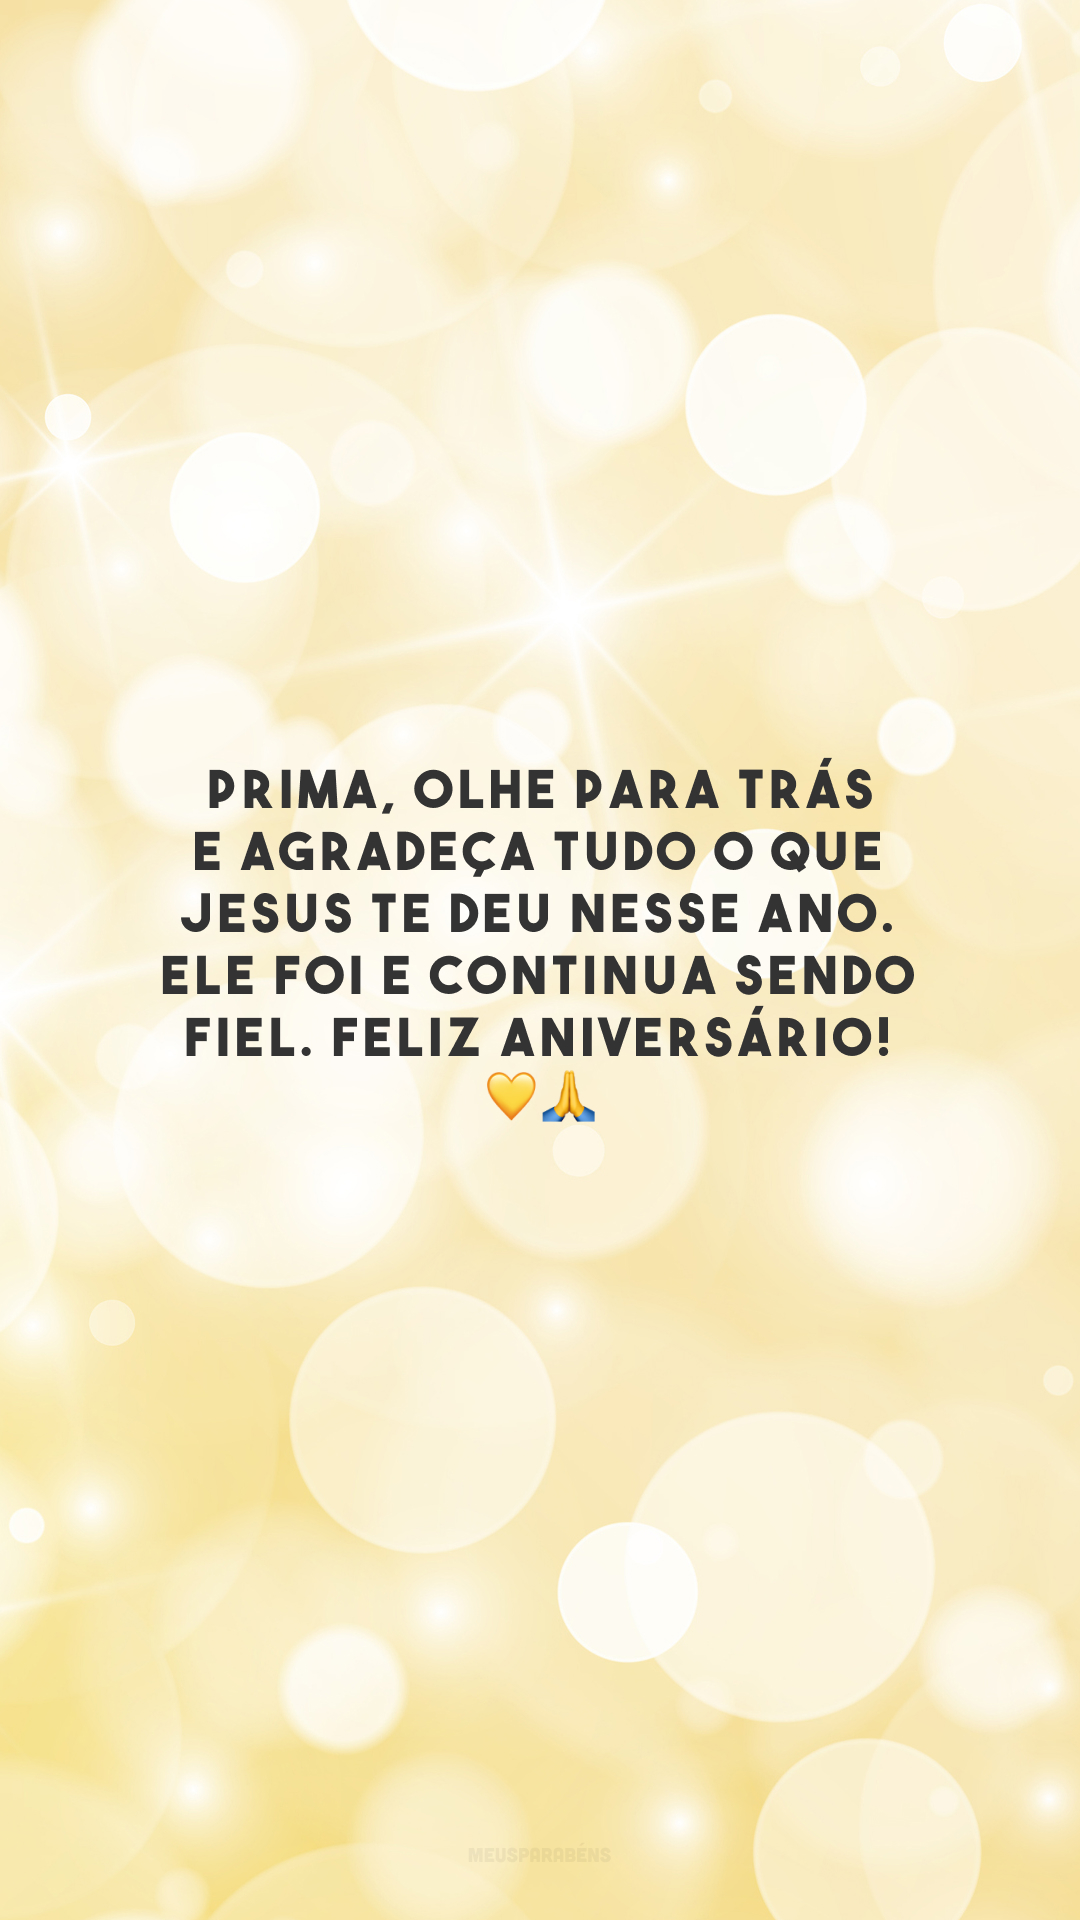 Prima, olhe para trás e agradeça tudo o que Jesus te deu nesse ano. Ele foi e continua sendo fiel. Feliz aniversário! 💛🙏